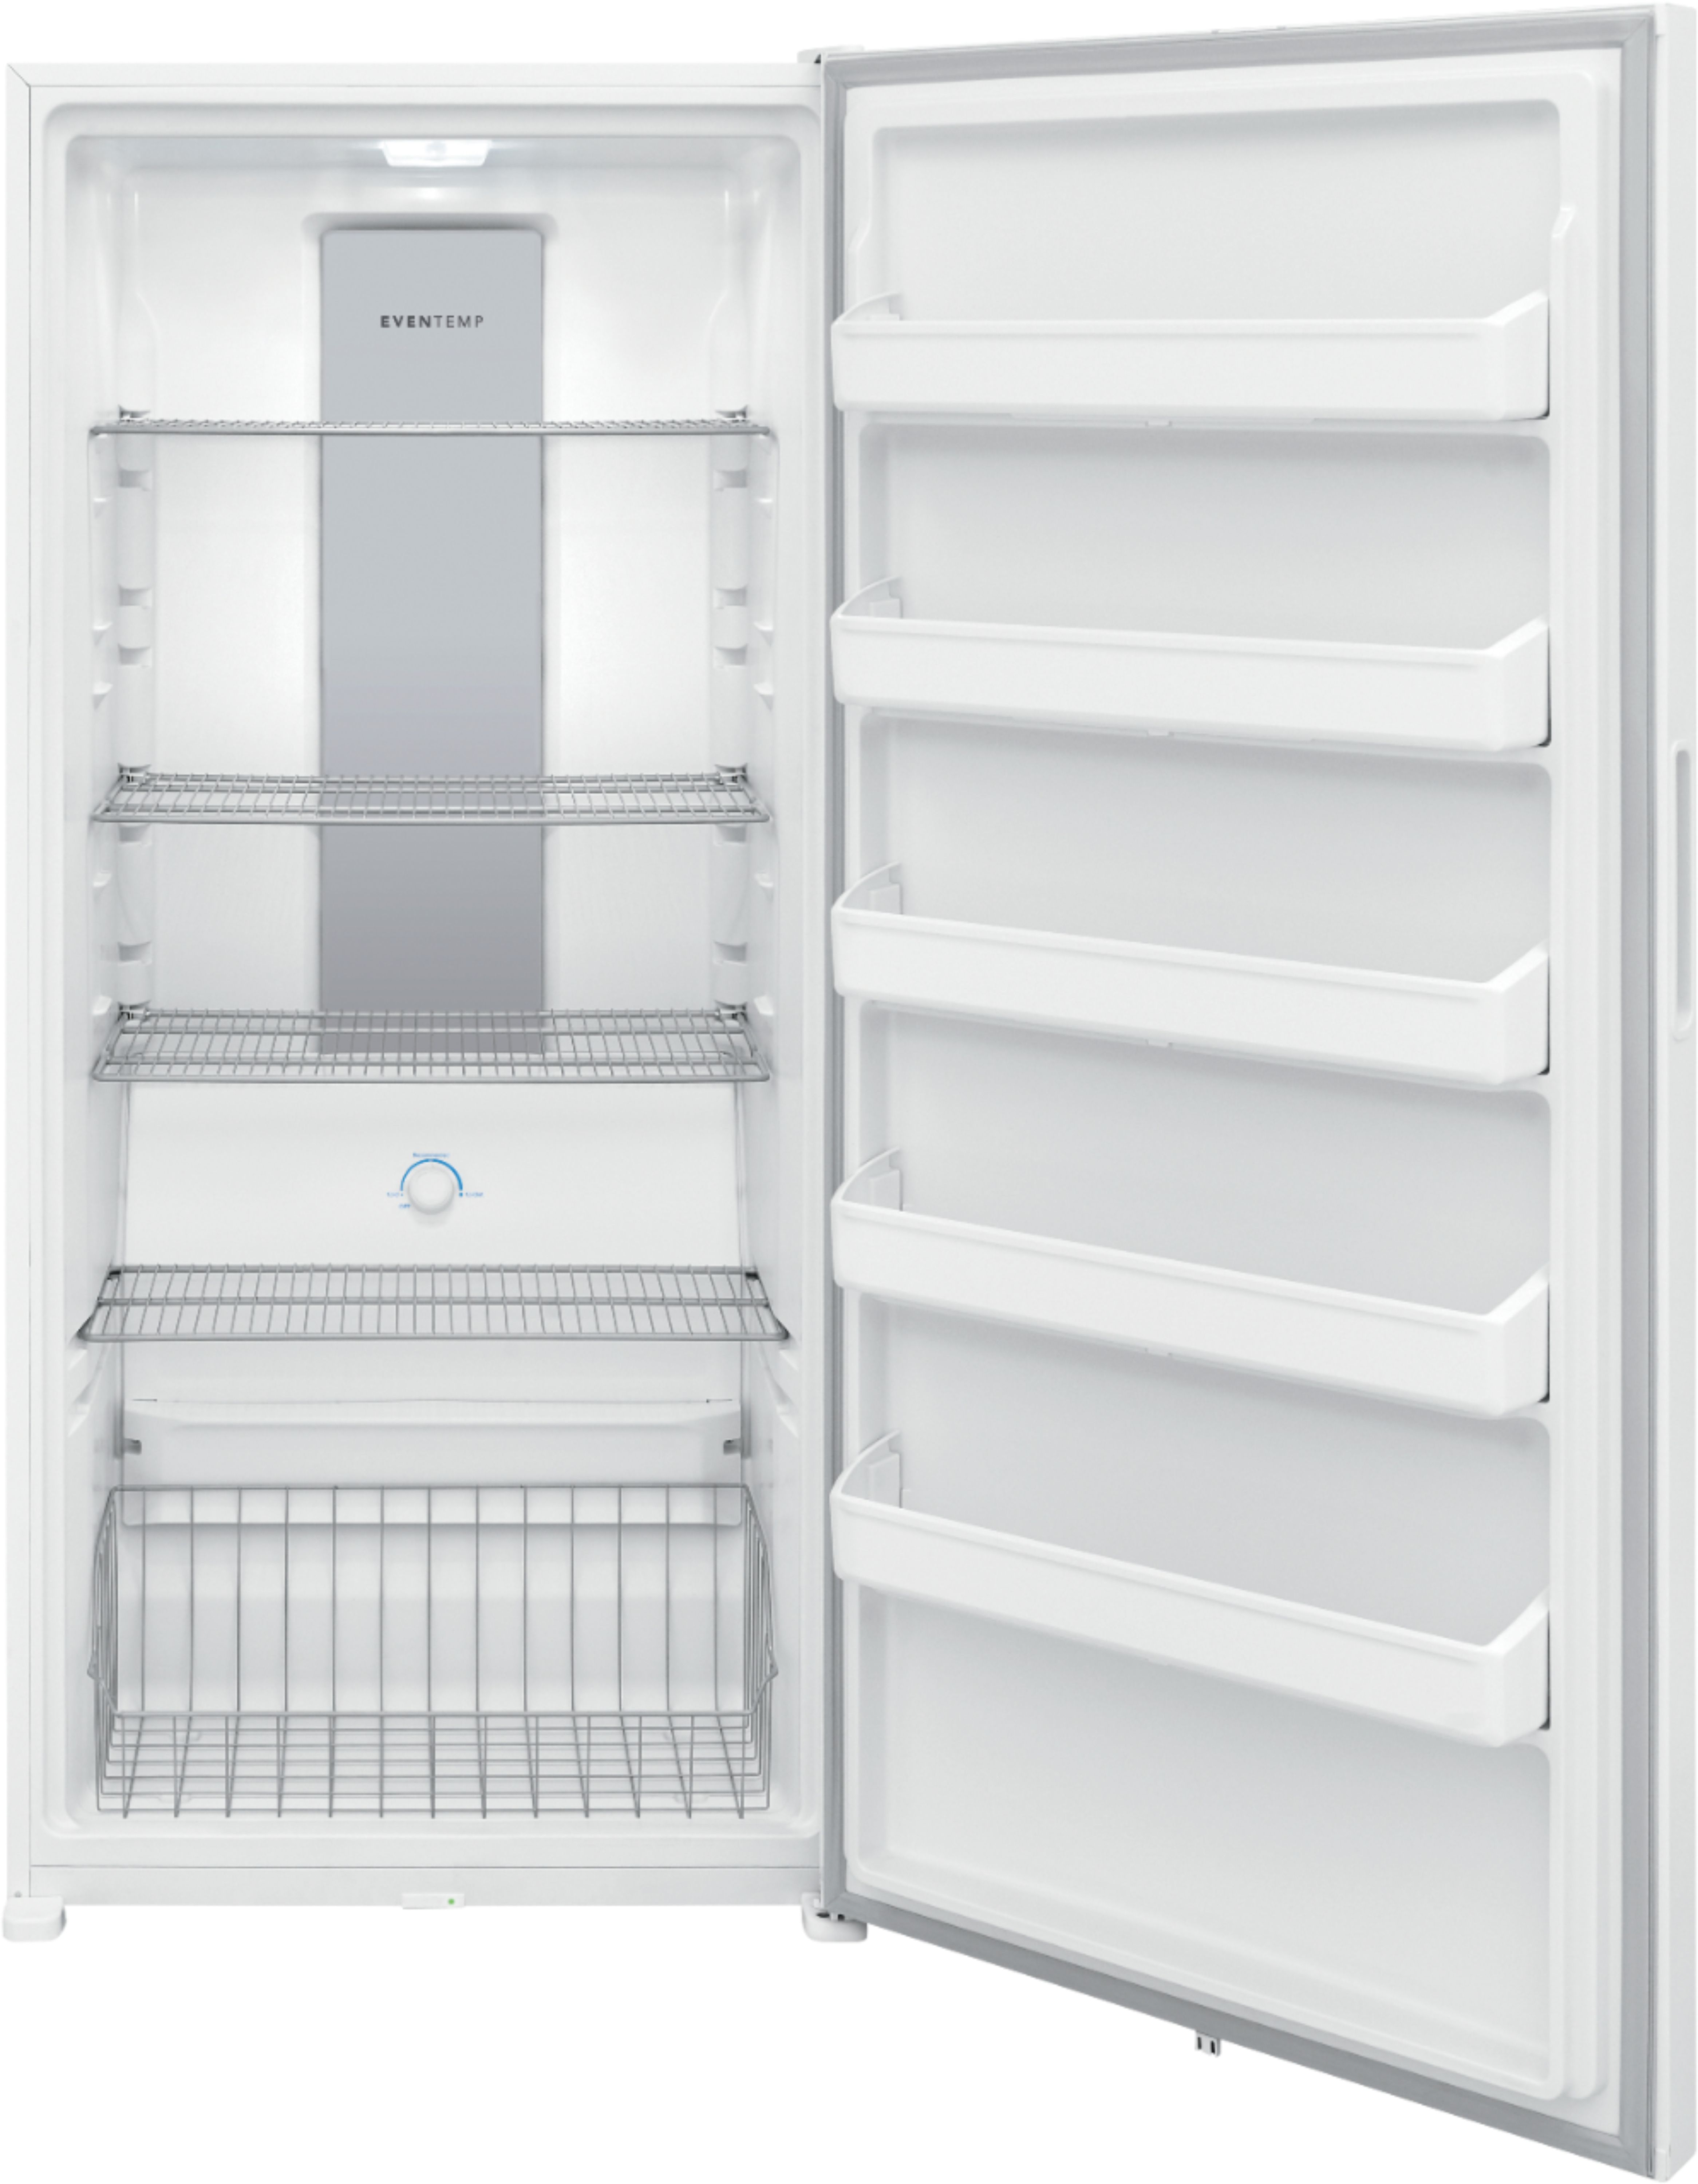 Customer Reviews Frigidaire 20 0 Cu Ft Upright Freezer With Interior